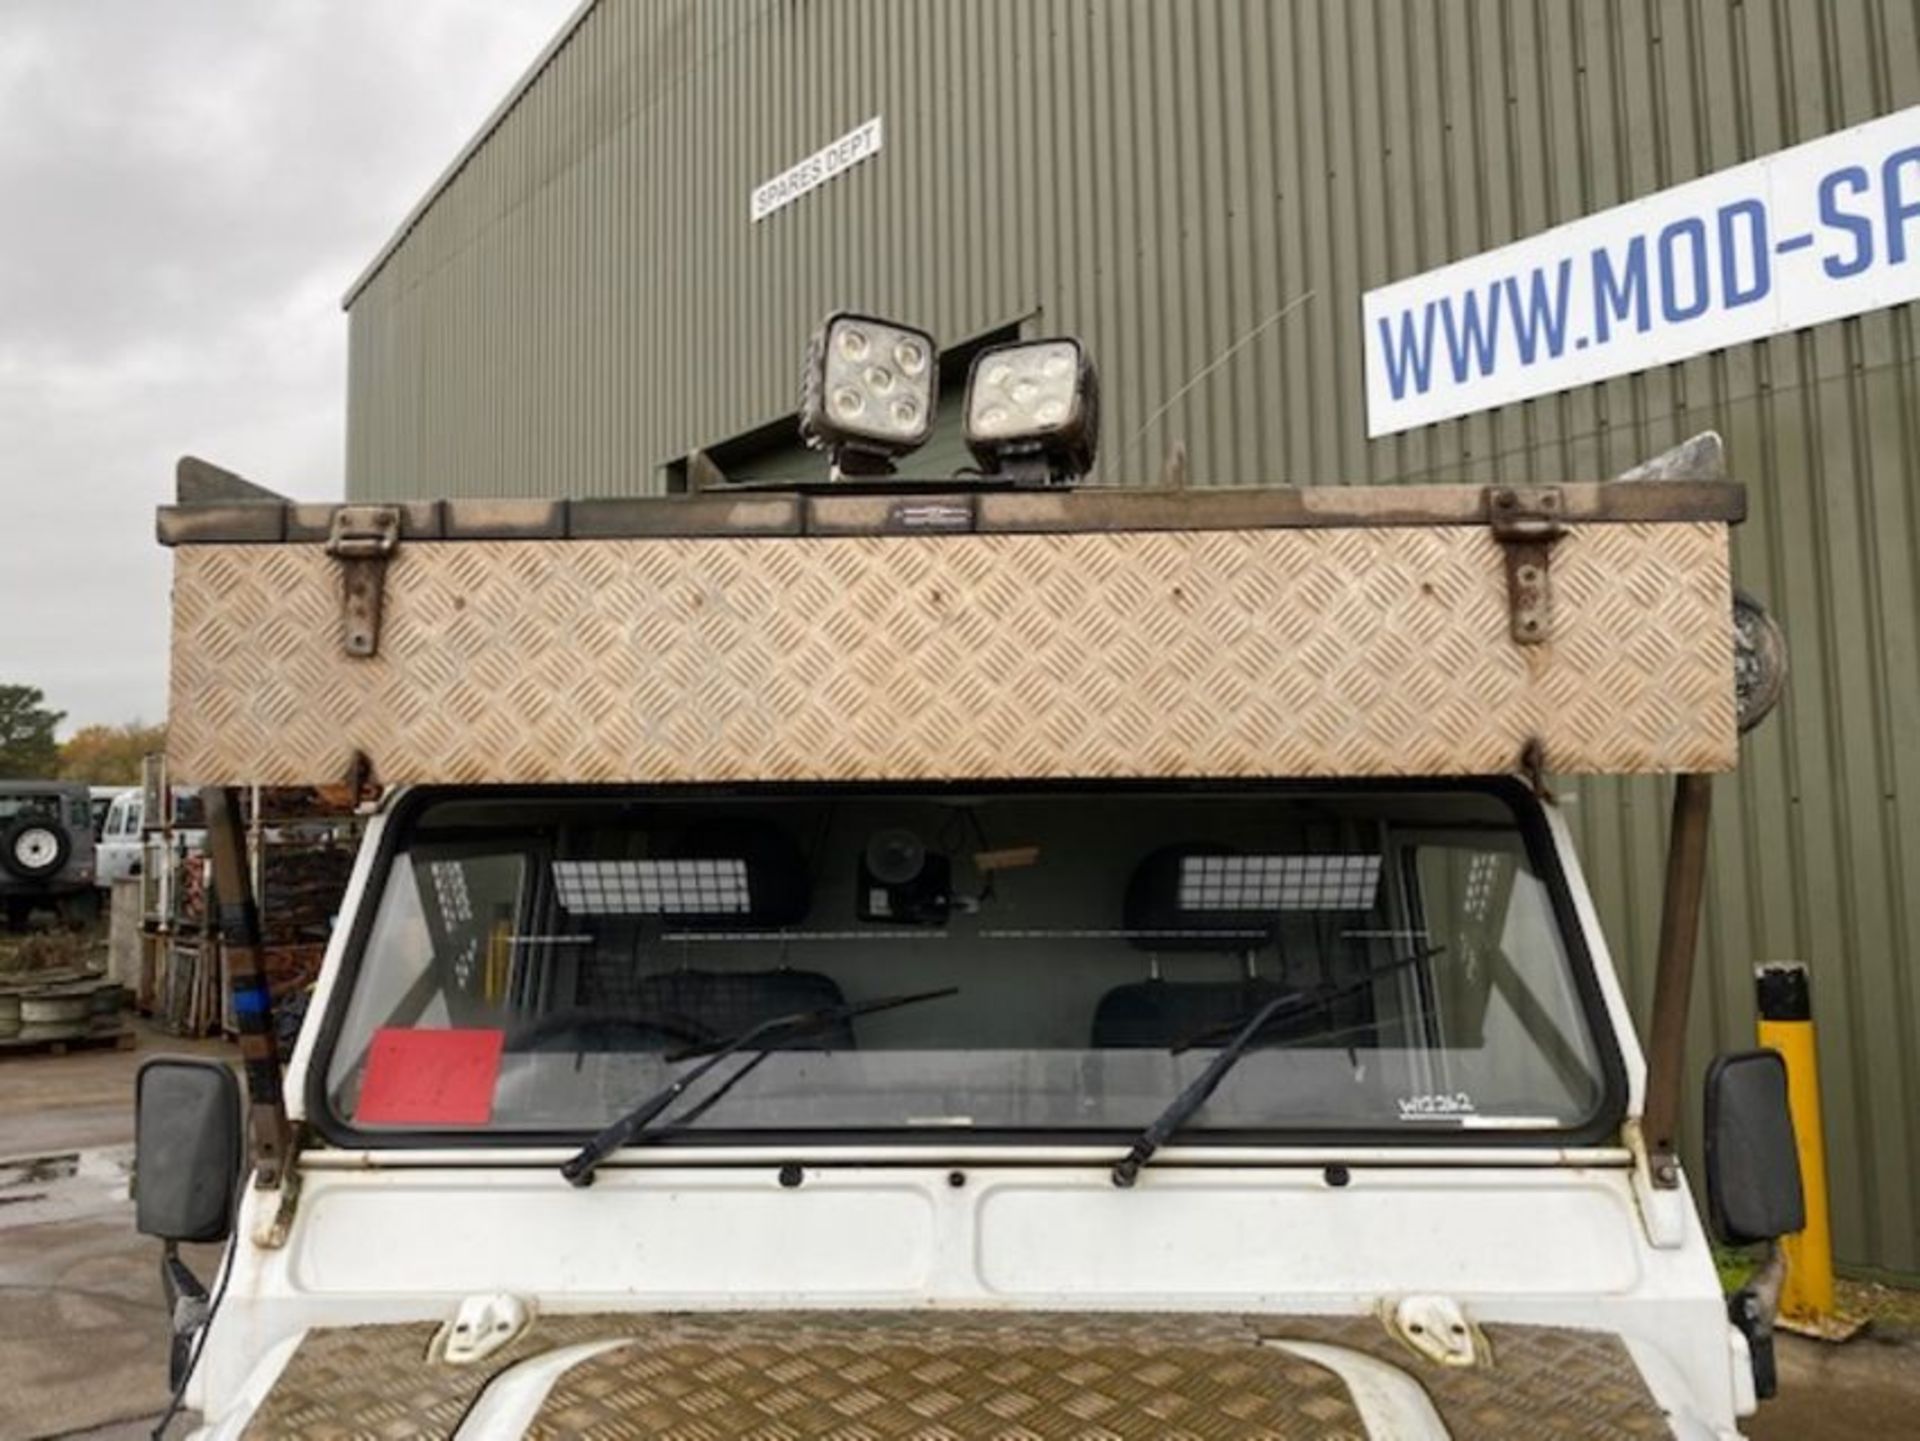 1 Owner 2011 Land Rover Defender 110 Puma hardtop 4x4 Utility vehicle (mobile workshop) - Image 15 of 51